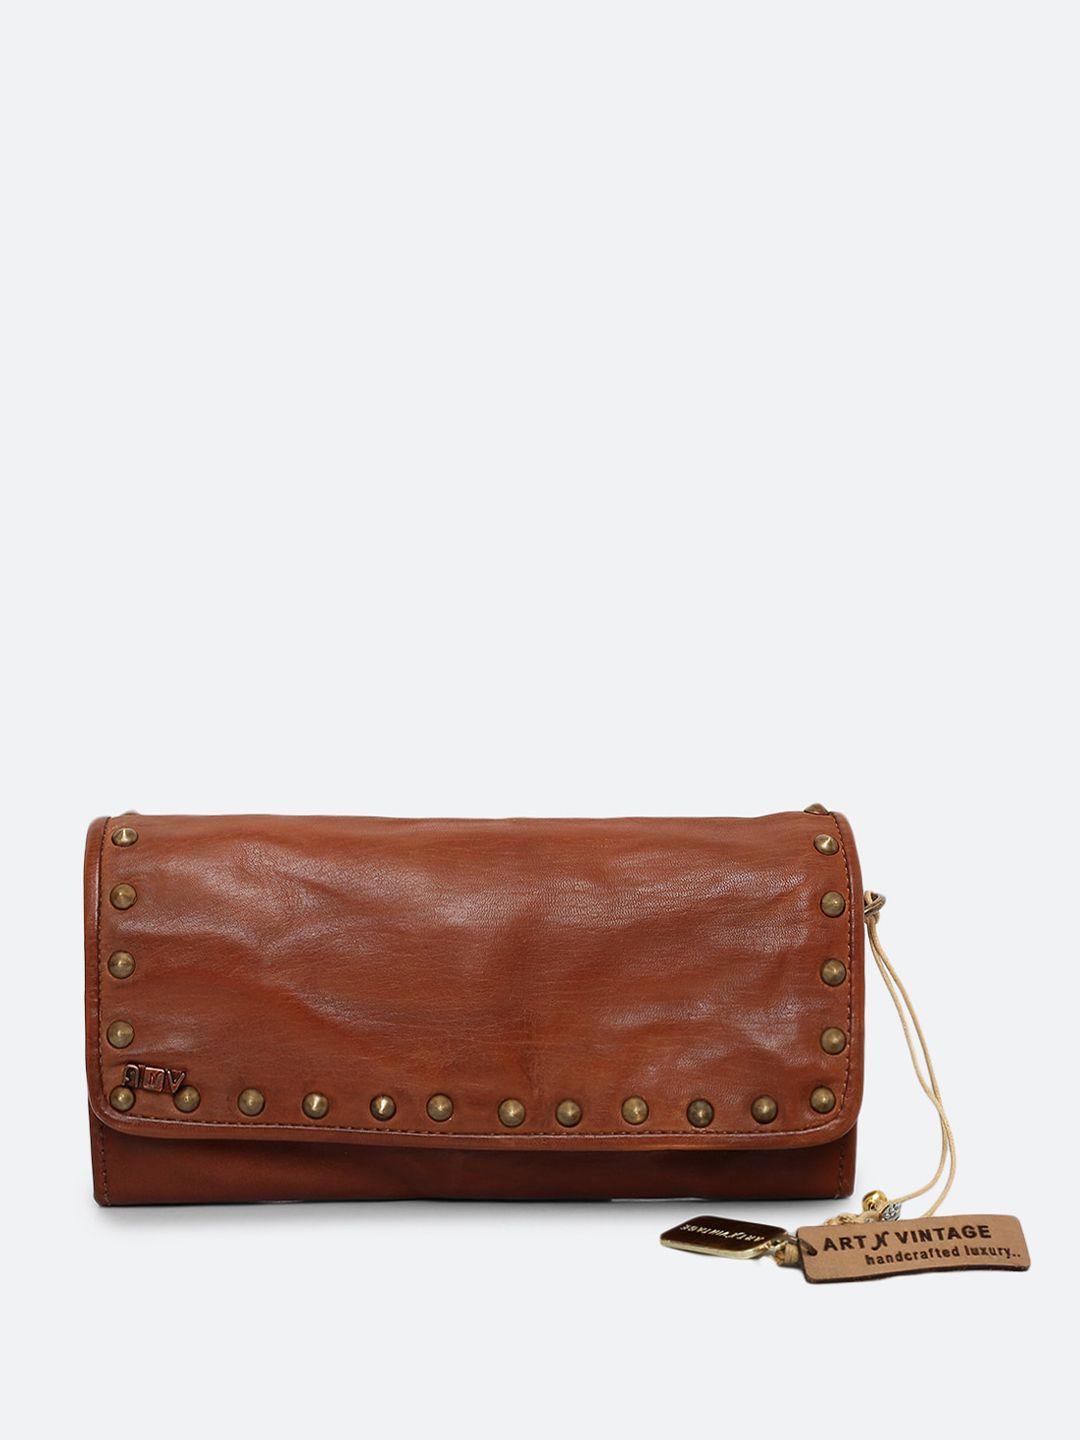 art n vintage women embellished leather envelope wallet